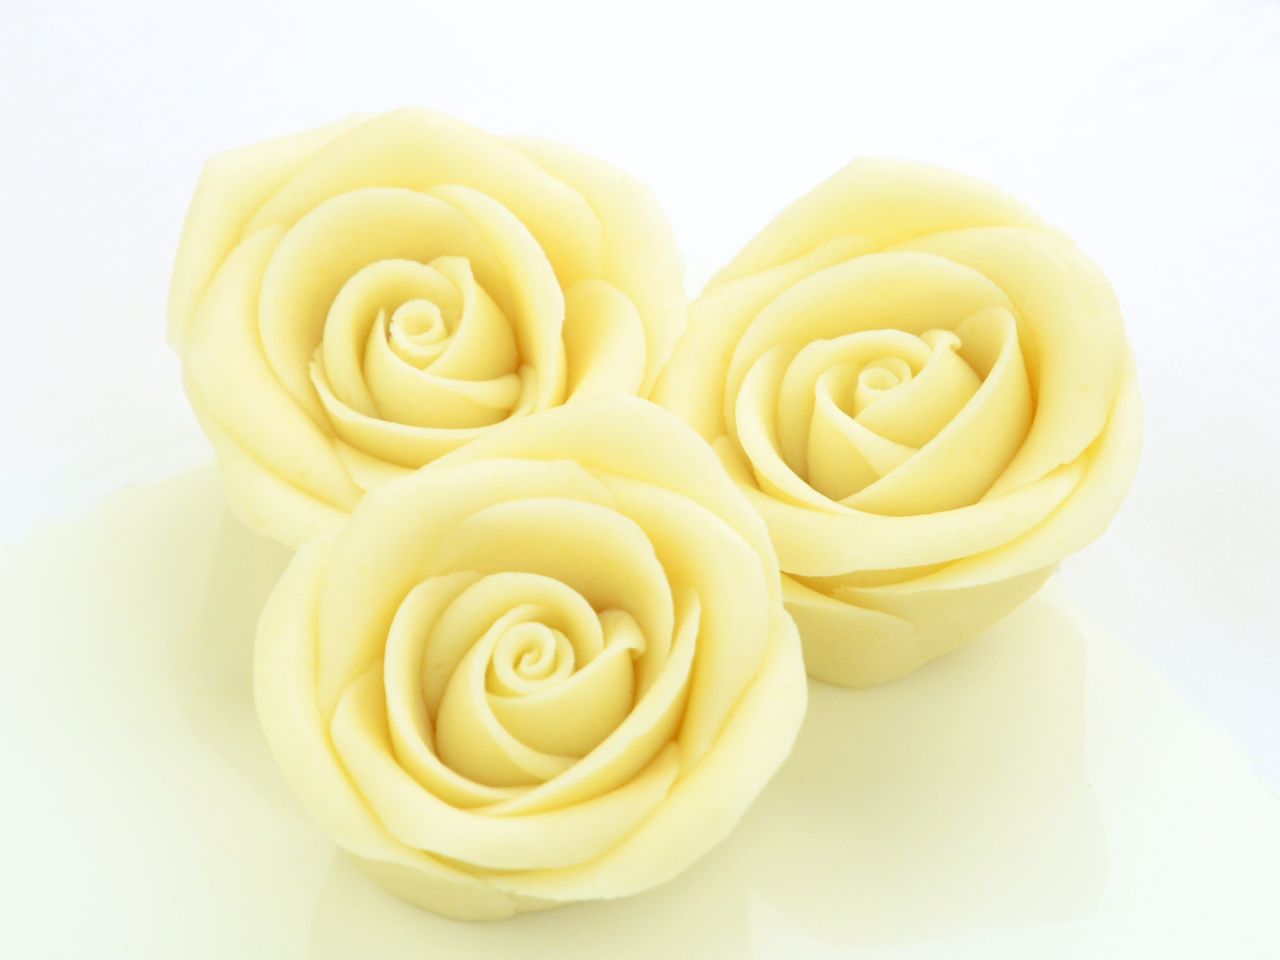 Große Marzipan-Rosen, Weiß, 16 Stück, 4,5 x 2,5 cm